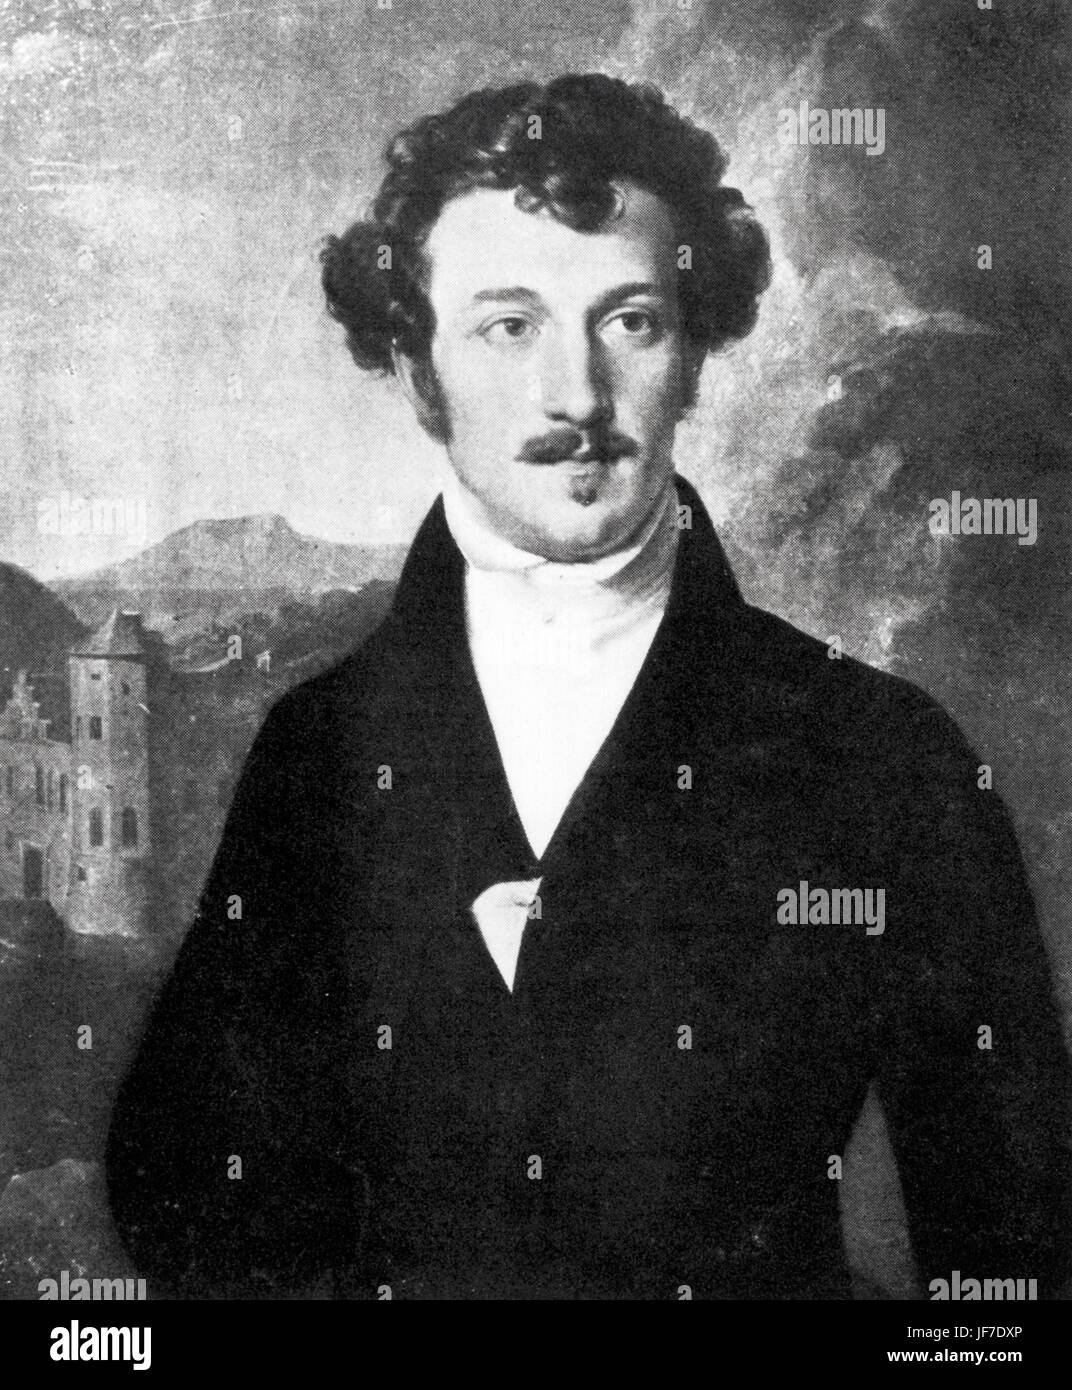 Franz von Schober - ritratto - Tedesco lo scrittore e poeta - 17 Maggio 1798 - 13 settembre 1882 - il più vicino di tutti Schubert amici Foto Stock